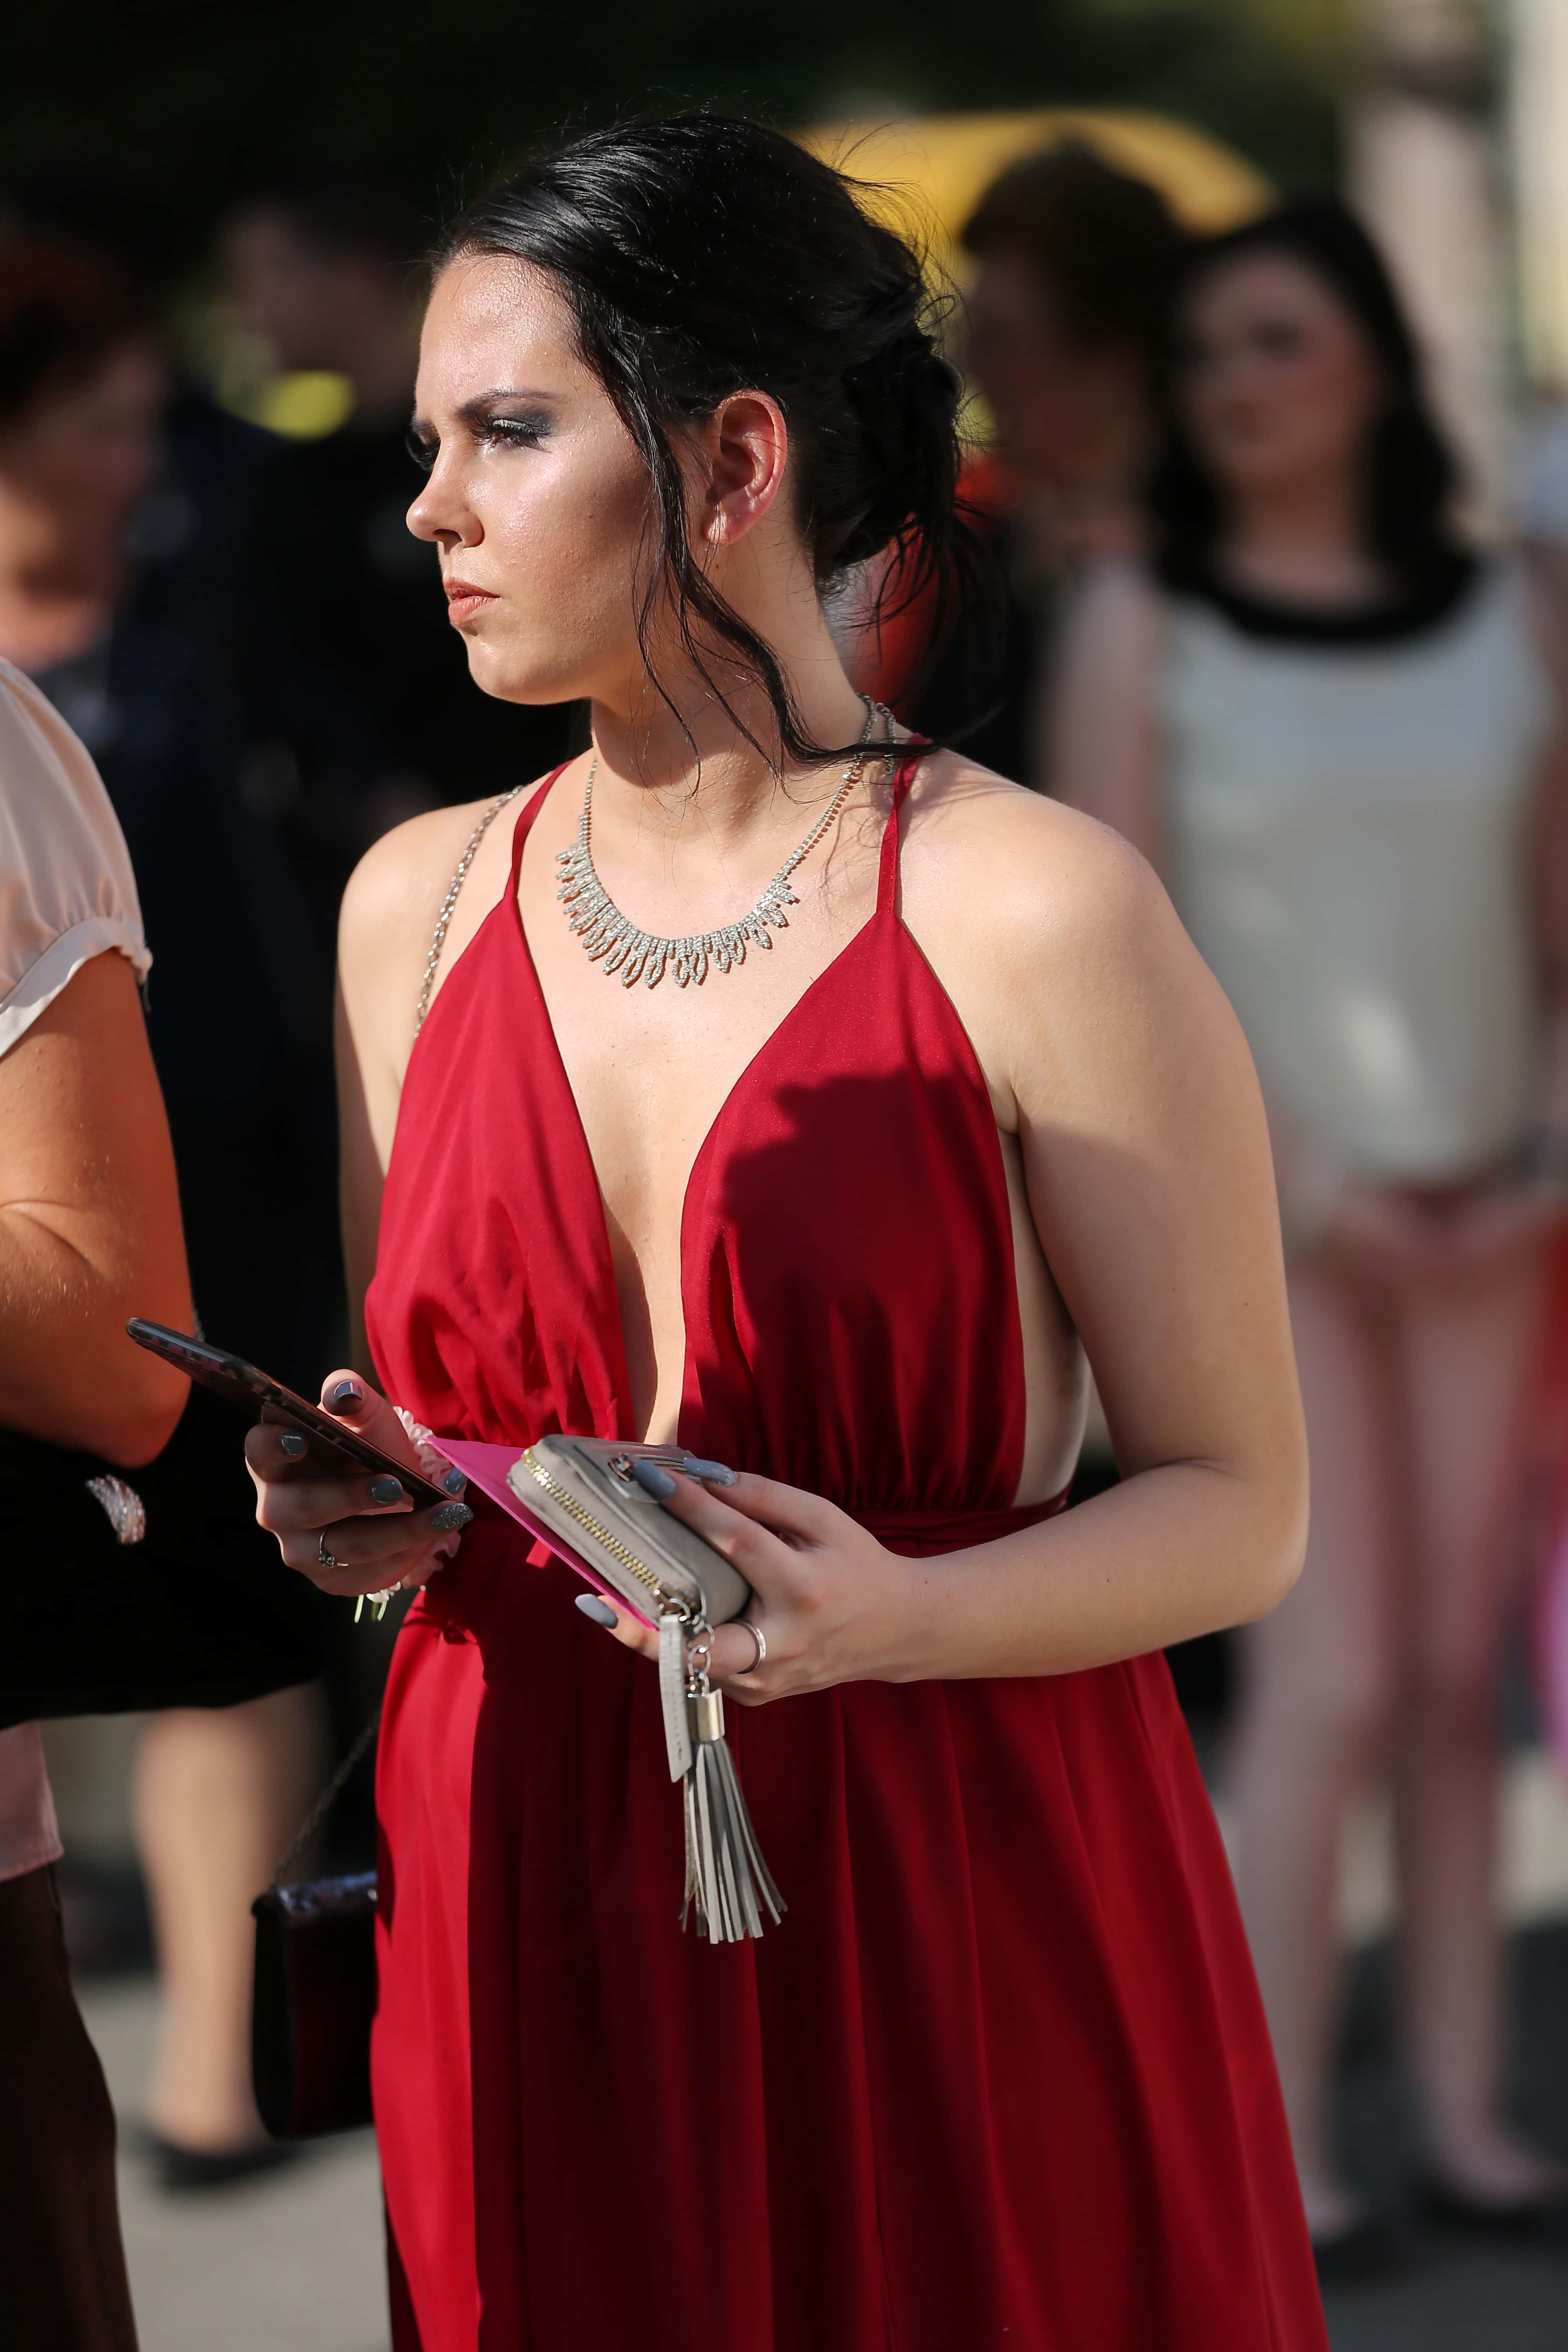 Imagen gratis: mujer joven, maravilloso, vestido, rojo, bolso